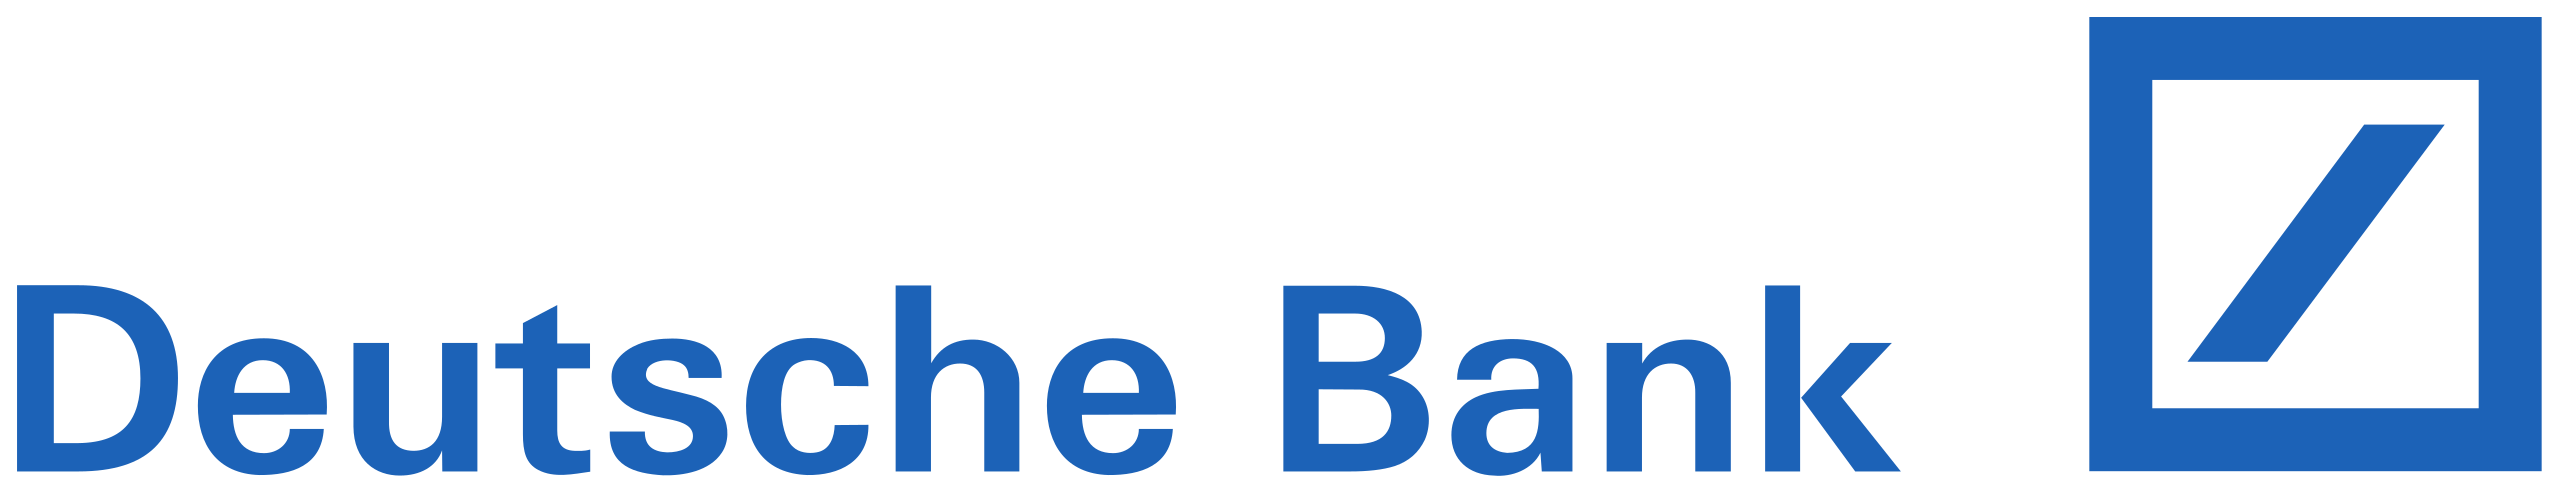 Deutsche Bank | Lead investor